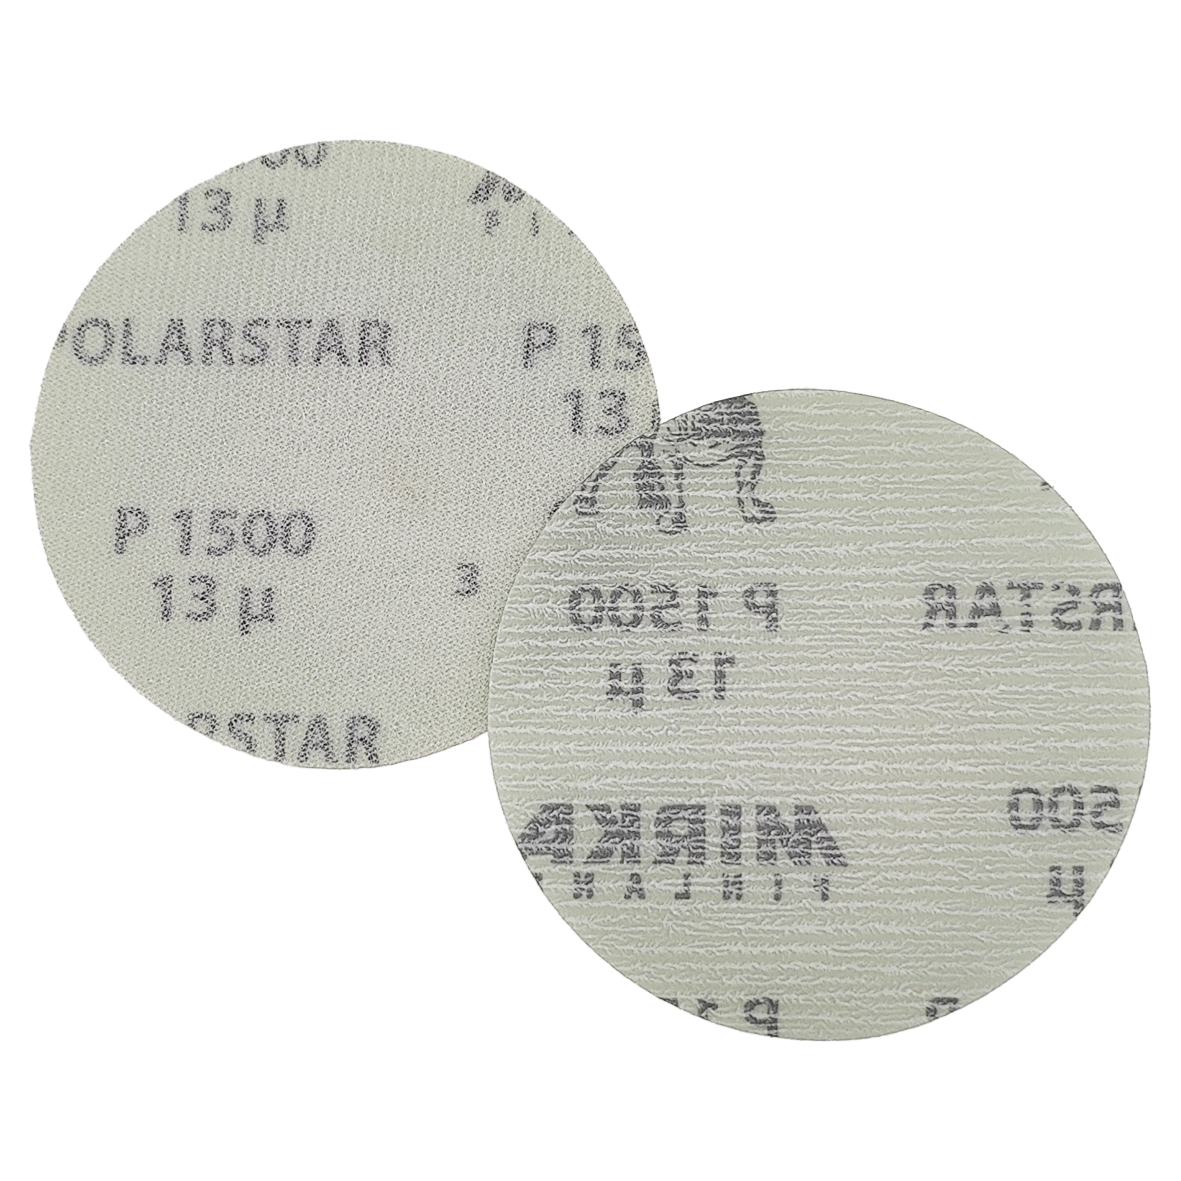 Abbildung Mirka Polarstar 77mm Scheiben Vorder- und Rückseite.